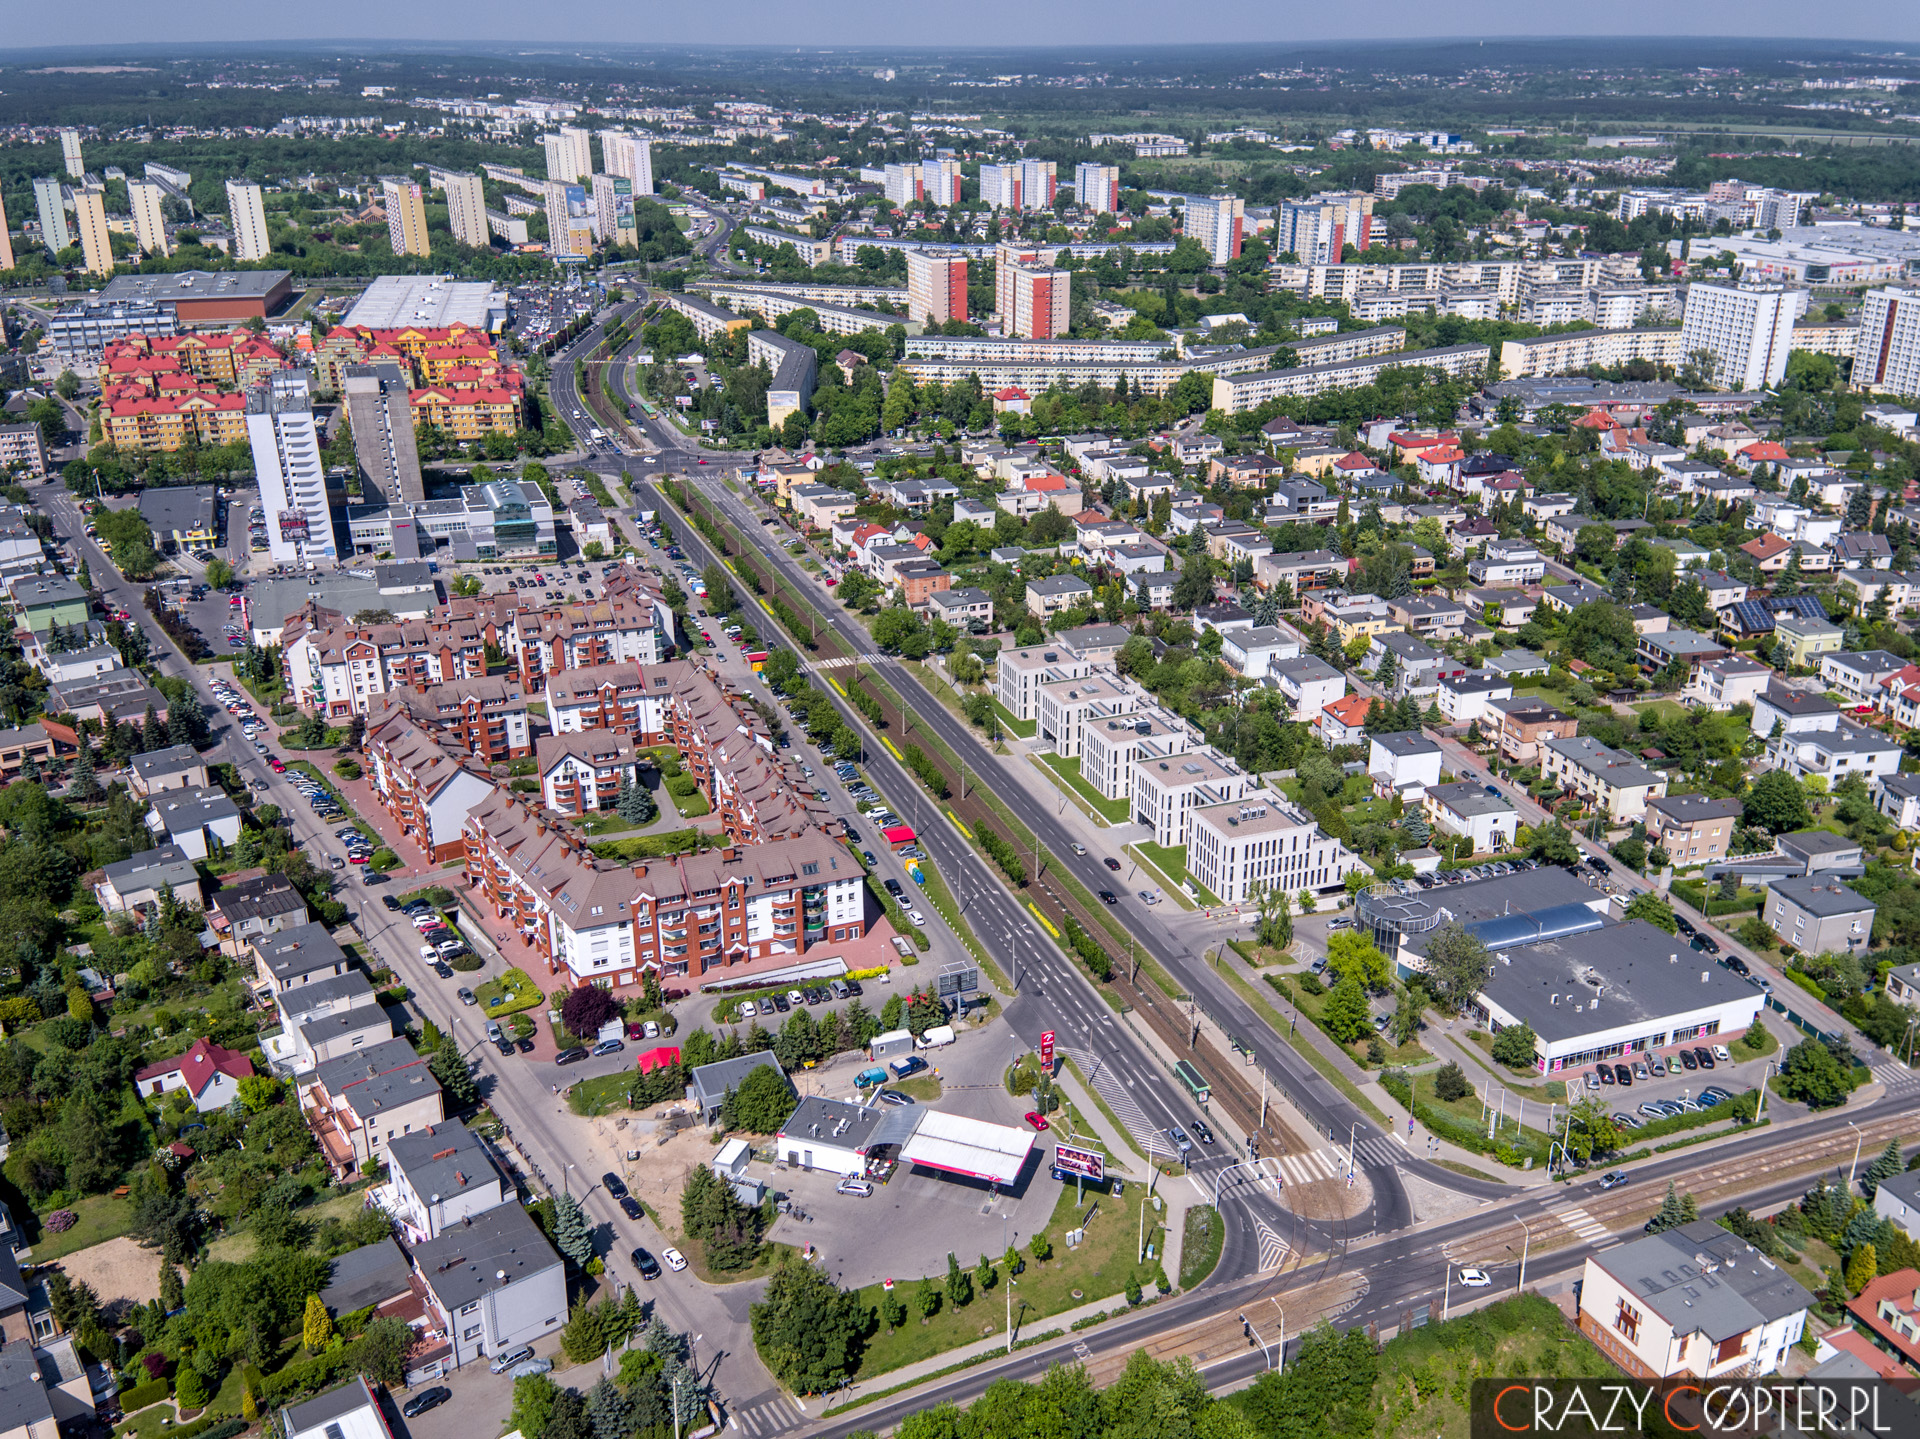 Zdjęcie z drona nieruchomości w Poznaniu idealnie pokazuje lokalizację nowo wybudowanych biur pod wynajem.